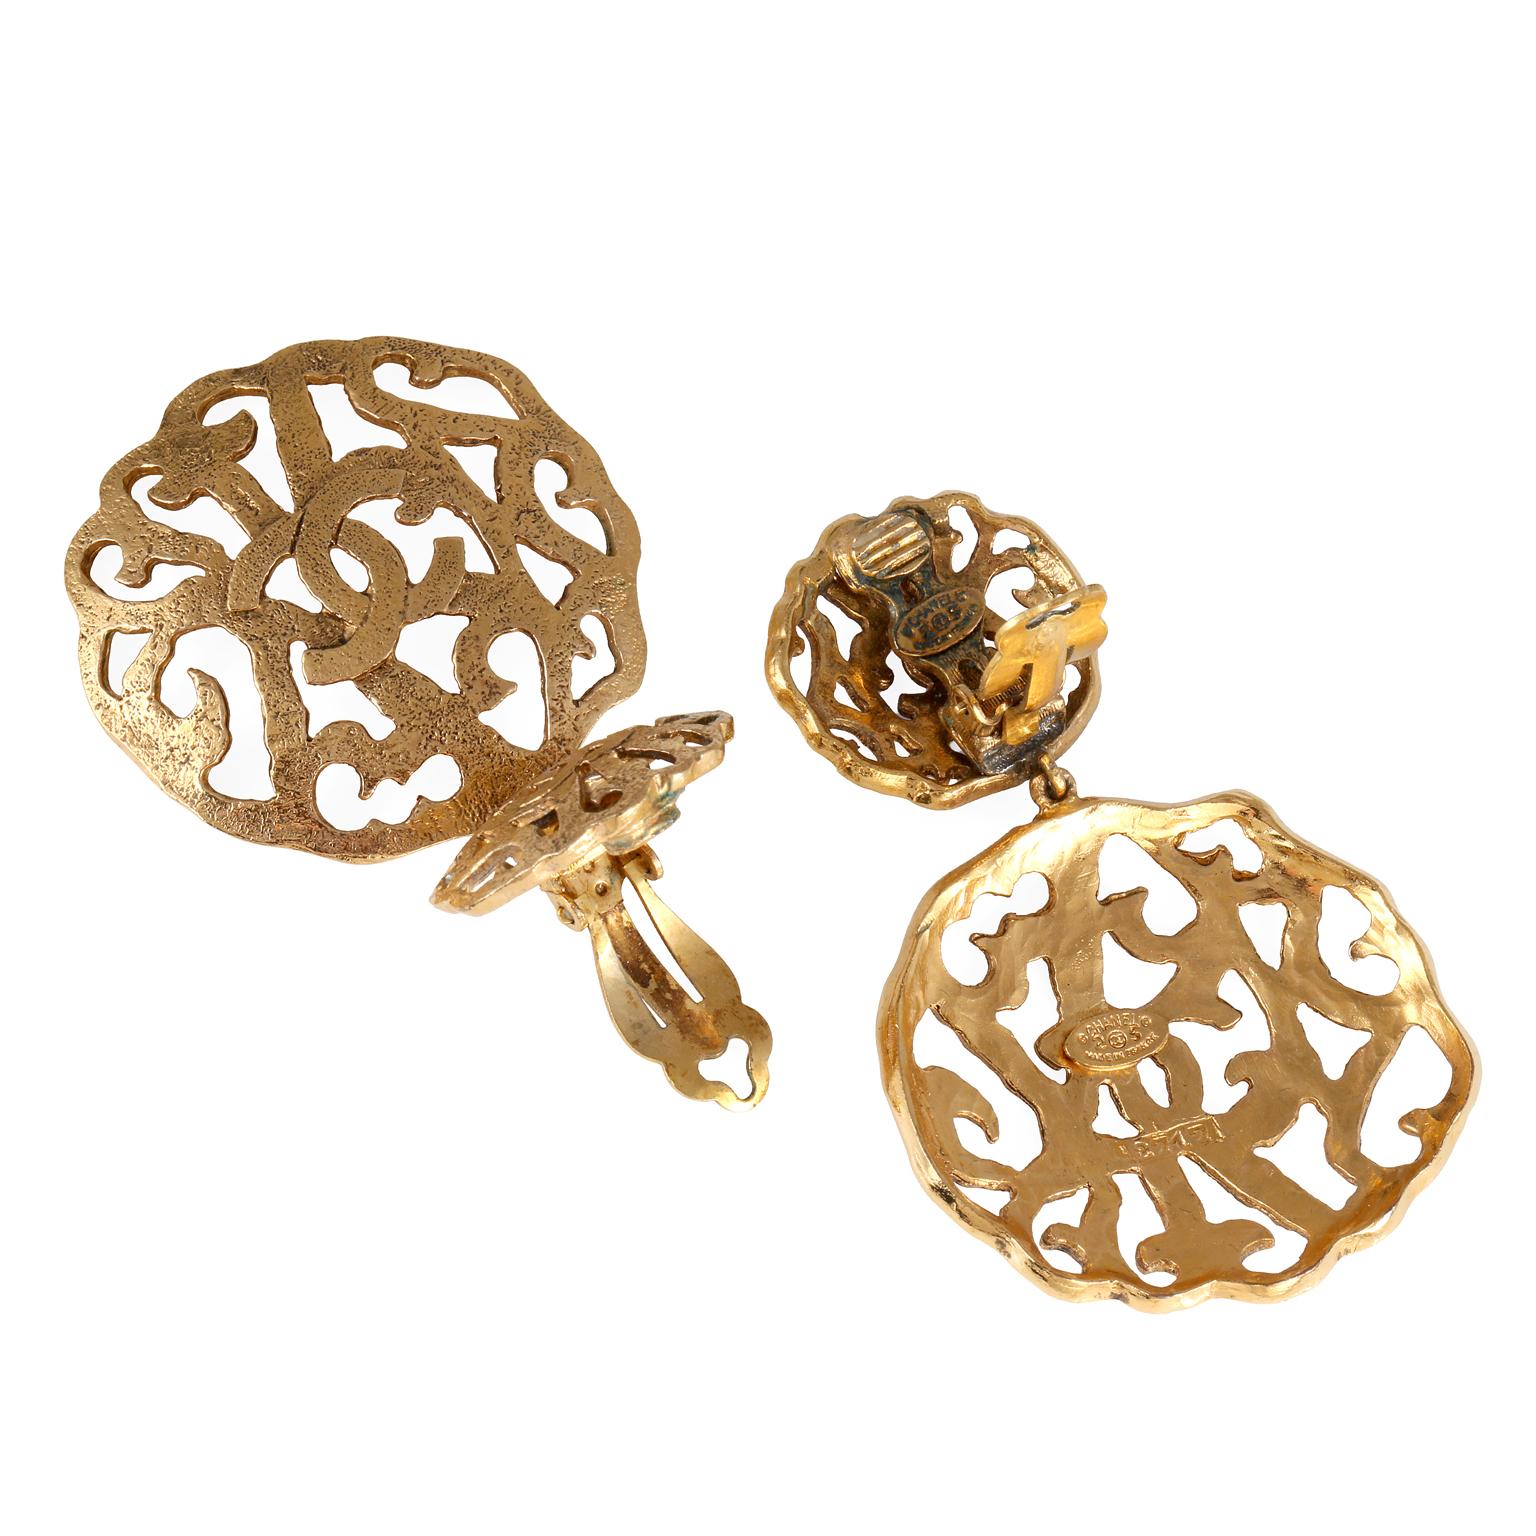 gold cc earrings